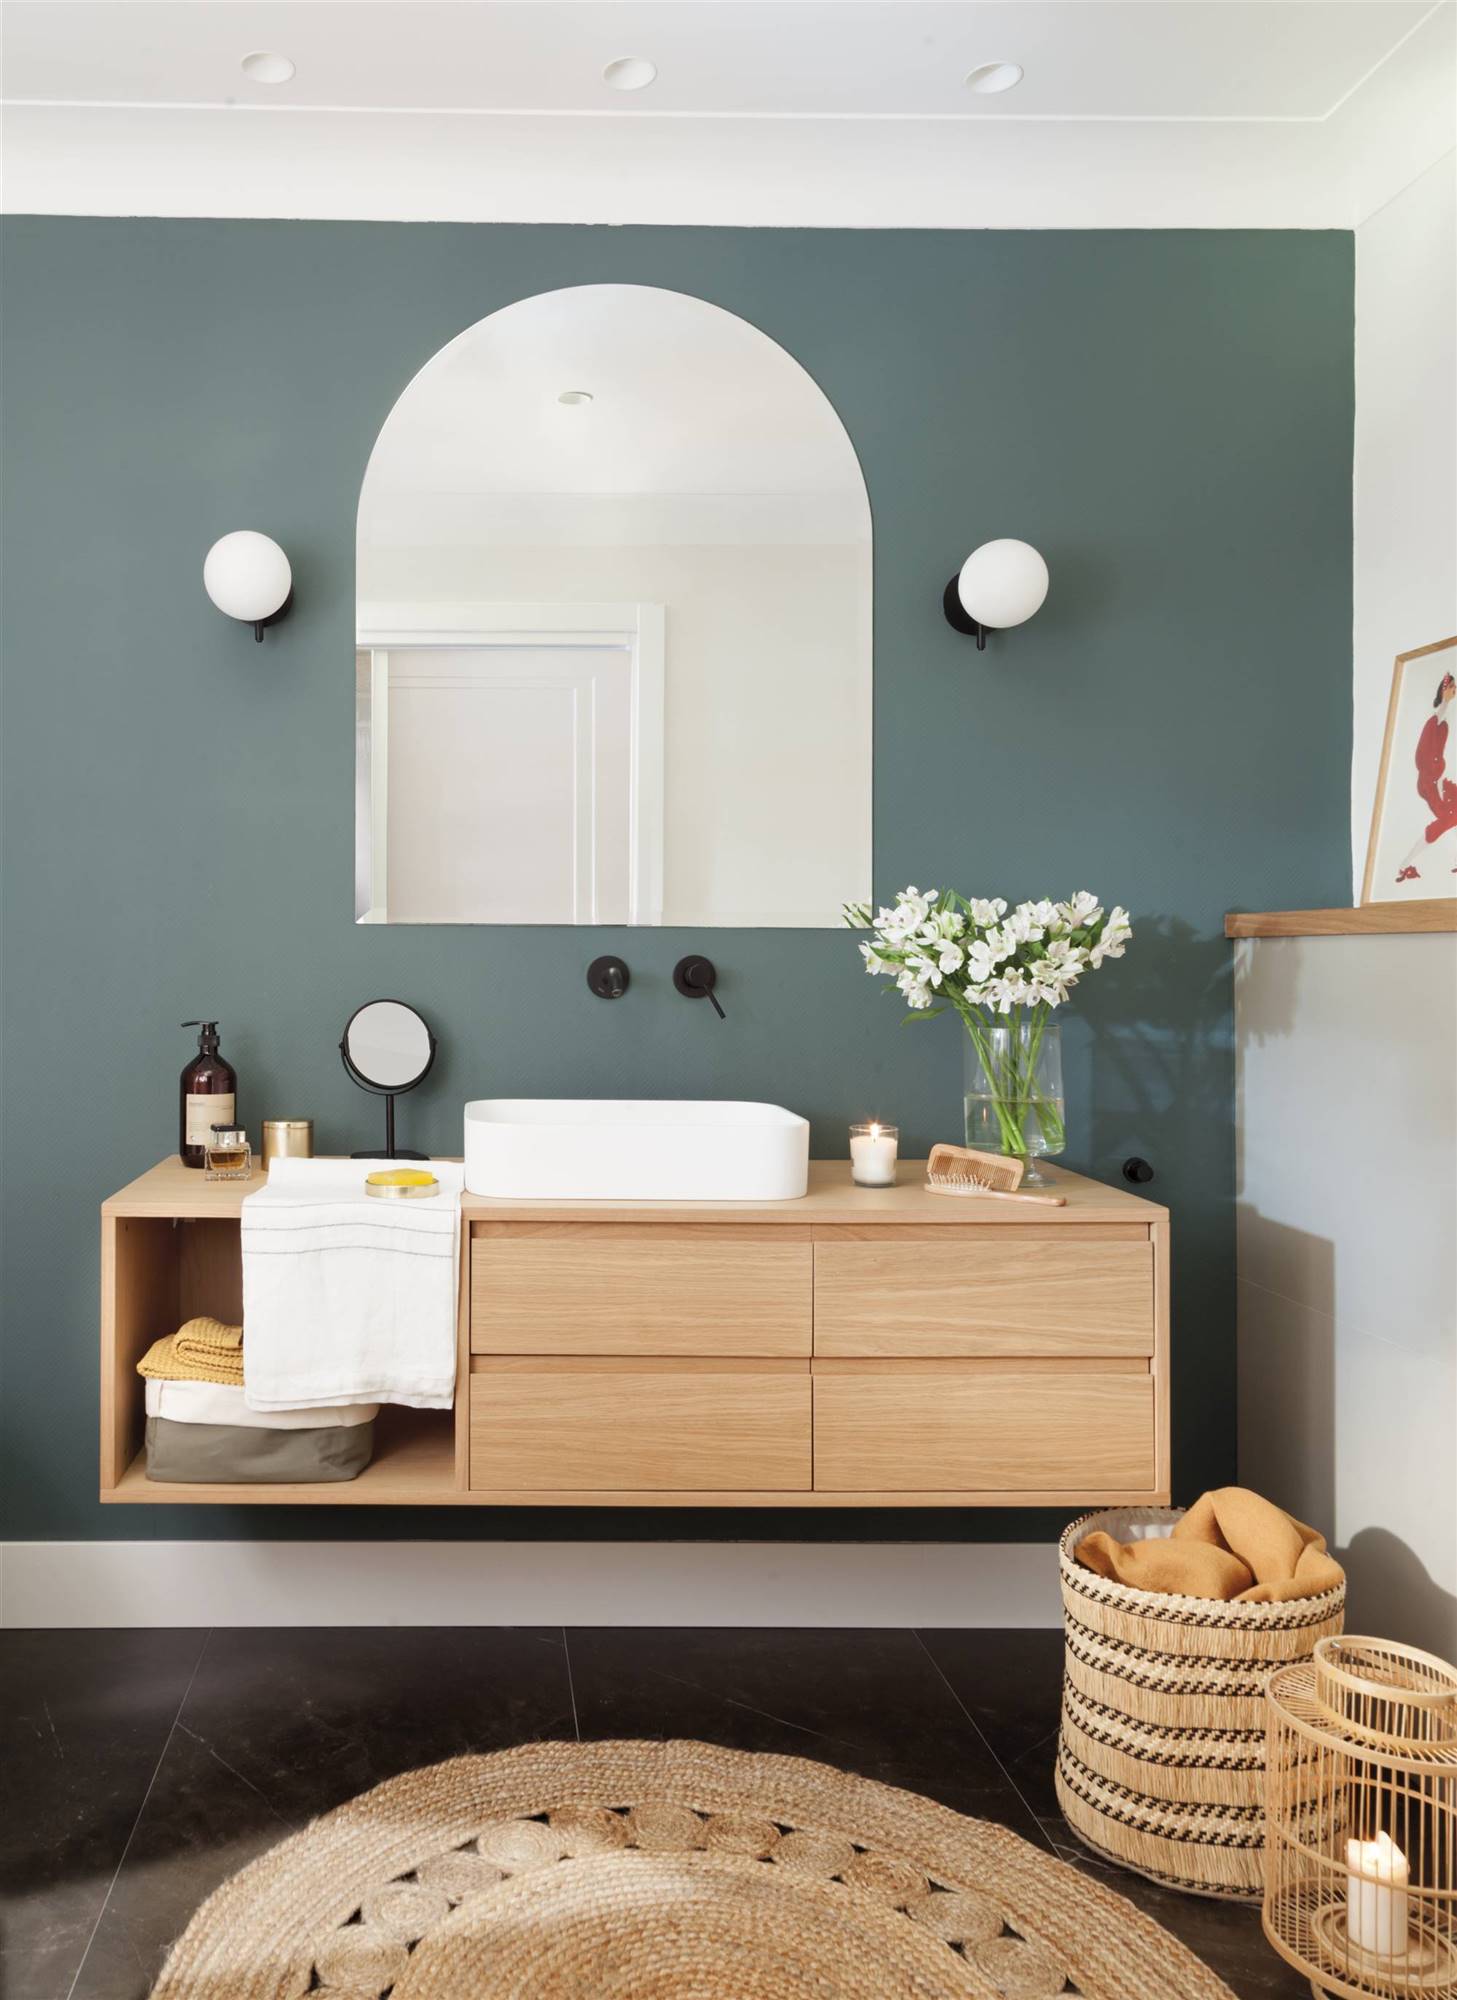 Baño moderno con mueble de madera y pared en azul. 